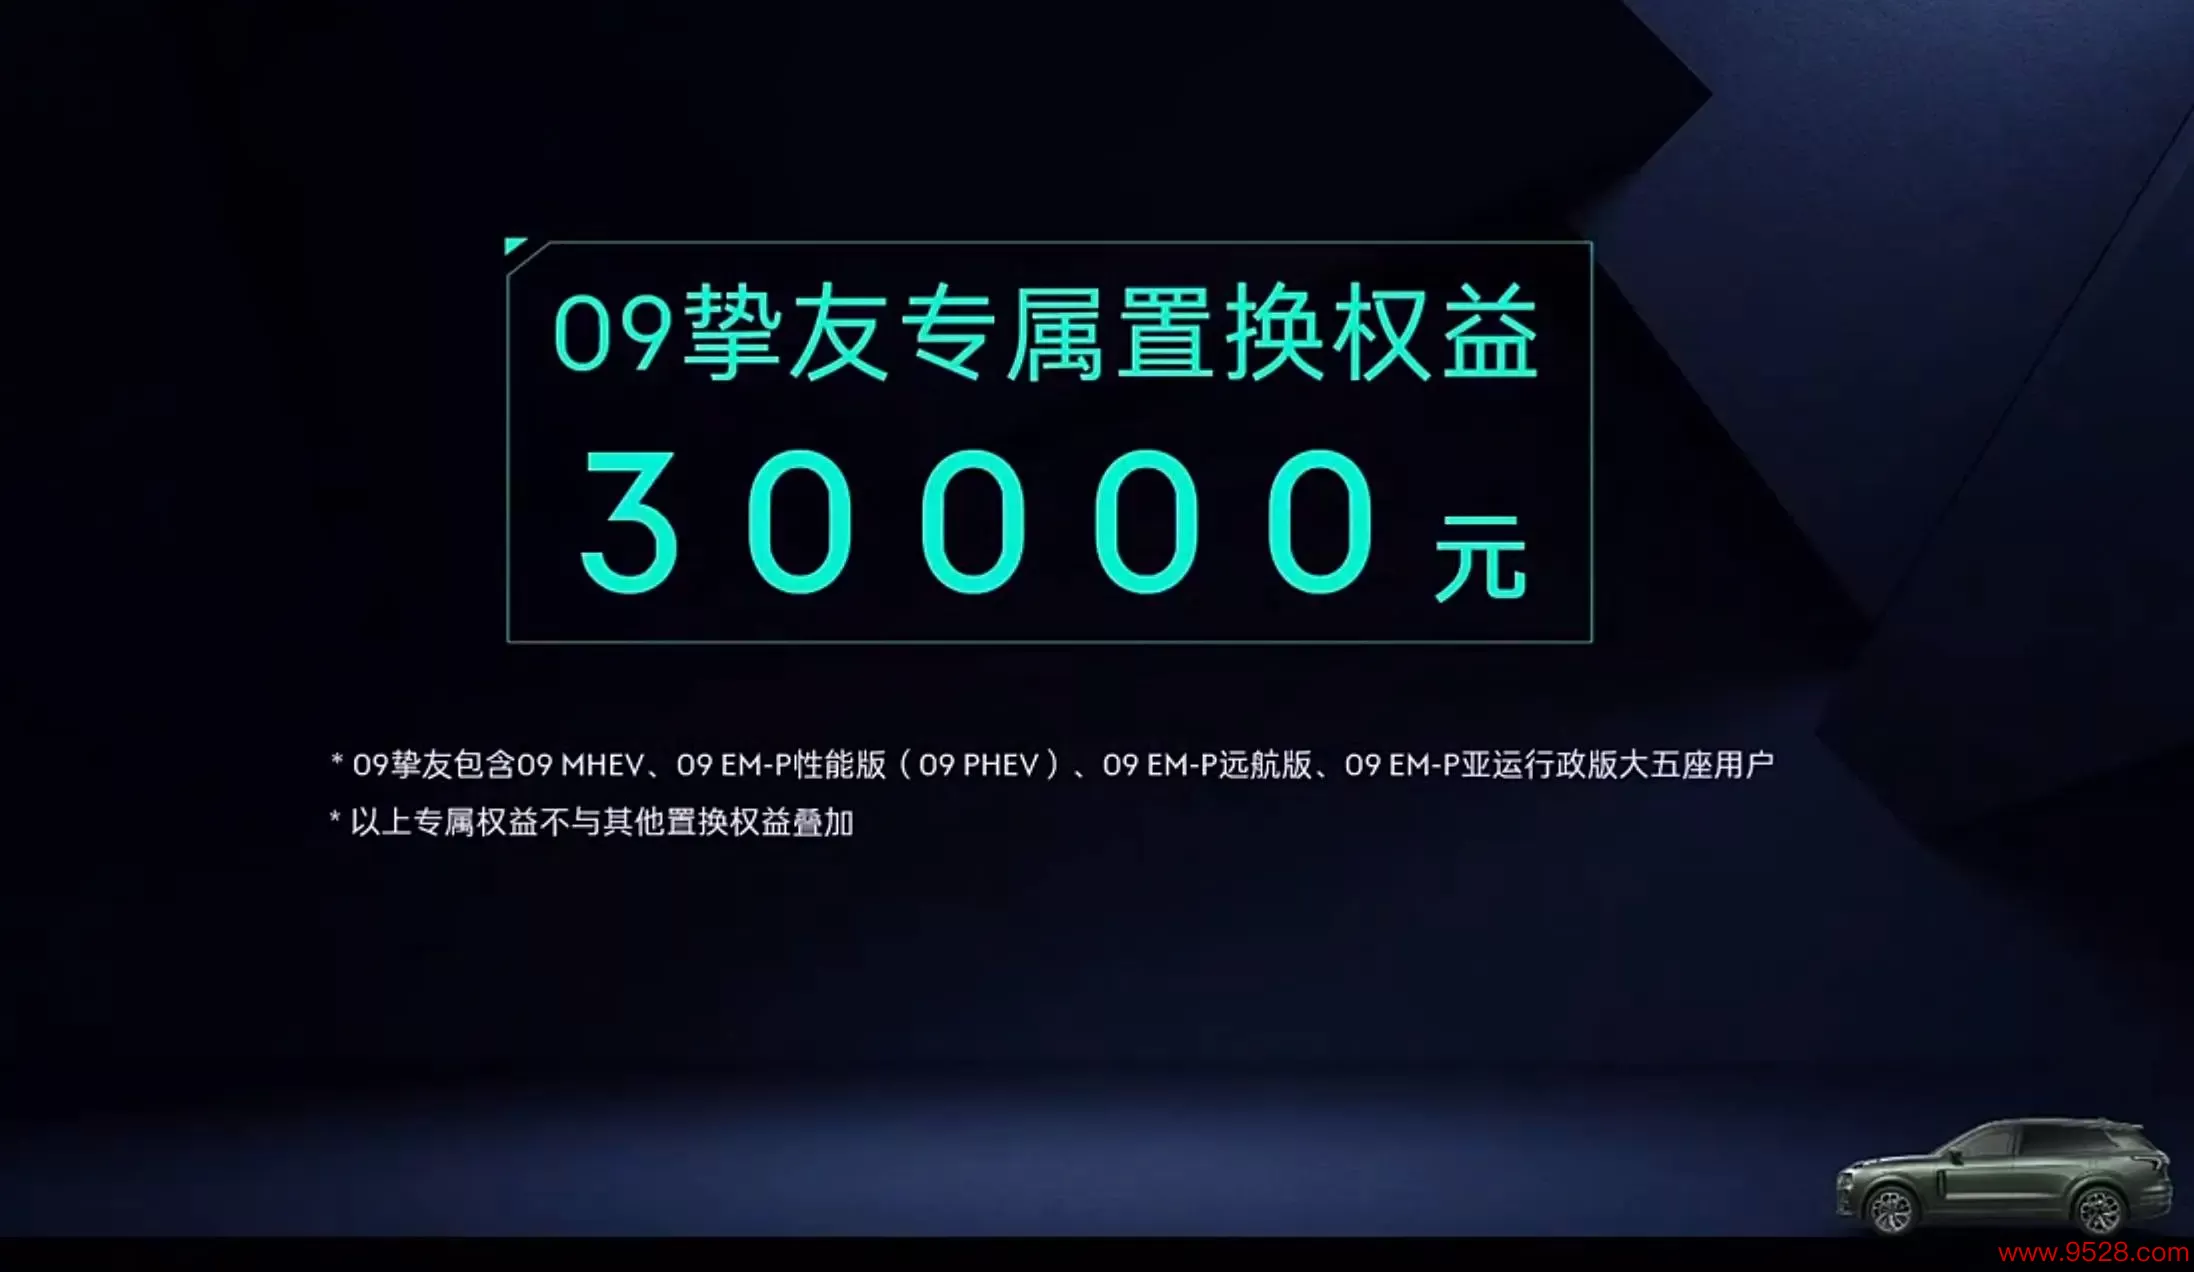 预售31.8万起/2024年1月上市 新款领克09 EM-P开启预售